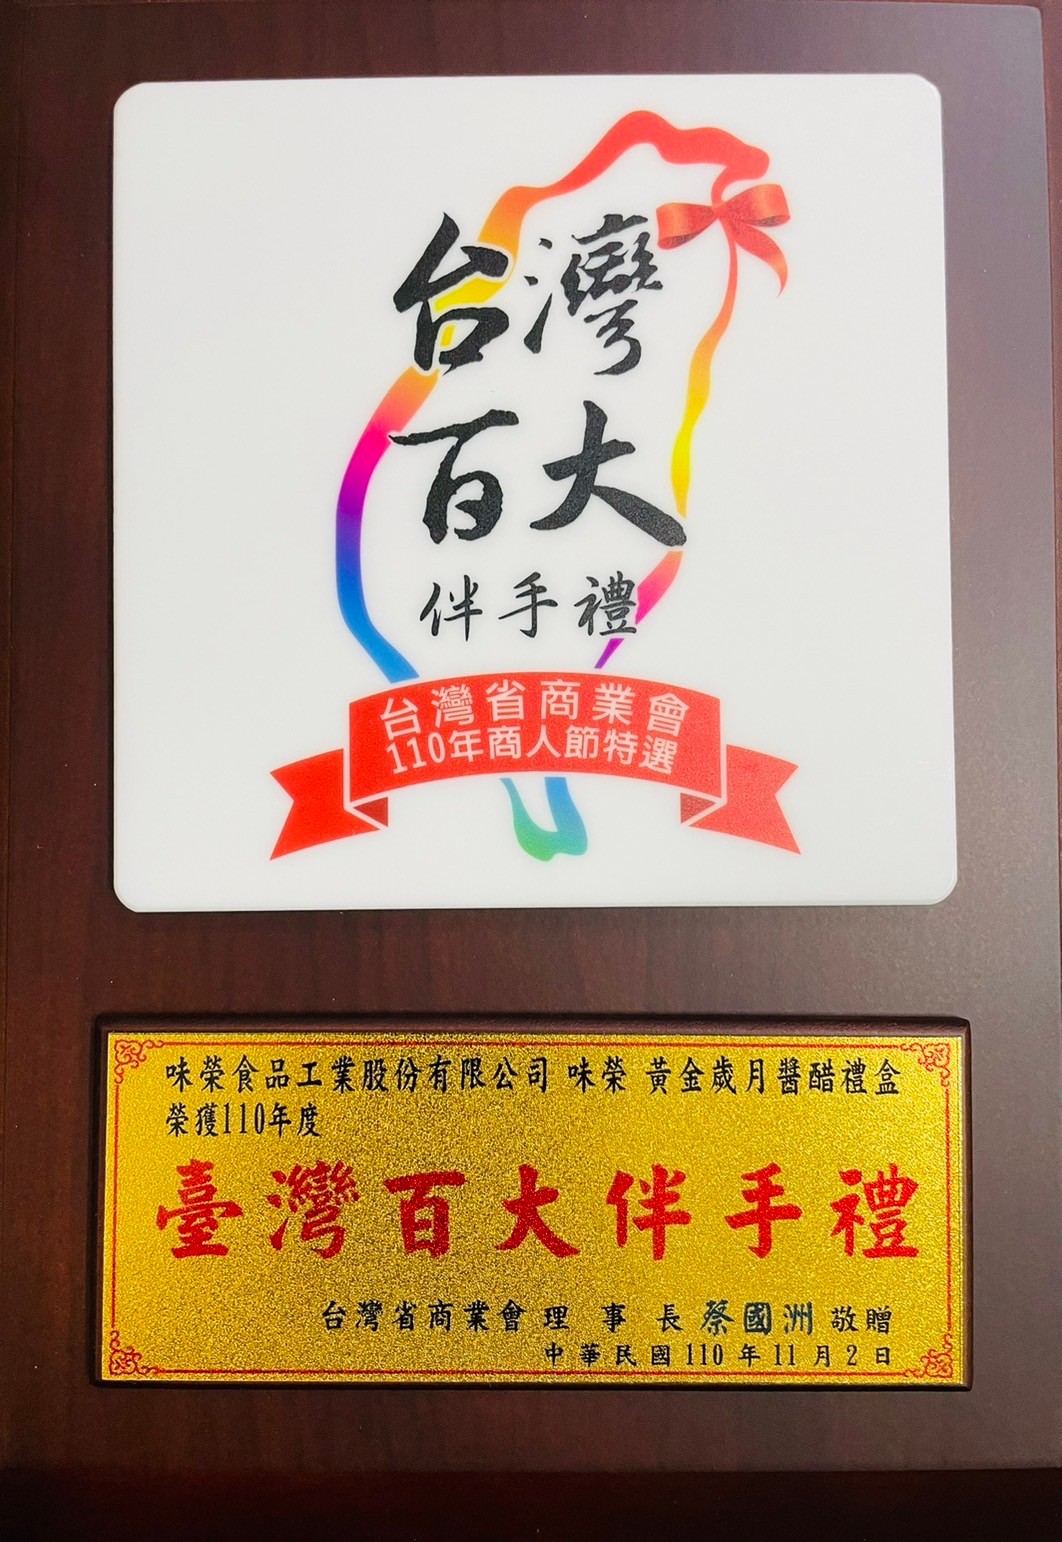 【威龍黄金年ソースと酢のギフトボックス】台湾省商工会議所が選定した商業110周年記念品「トップ100お土産」を受賞しました。